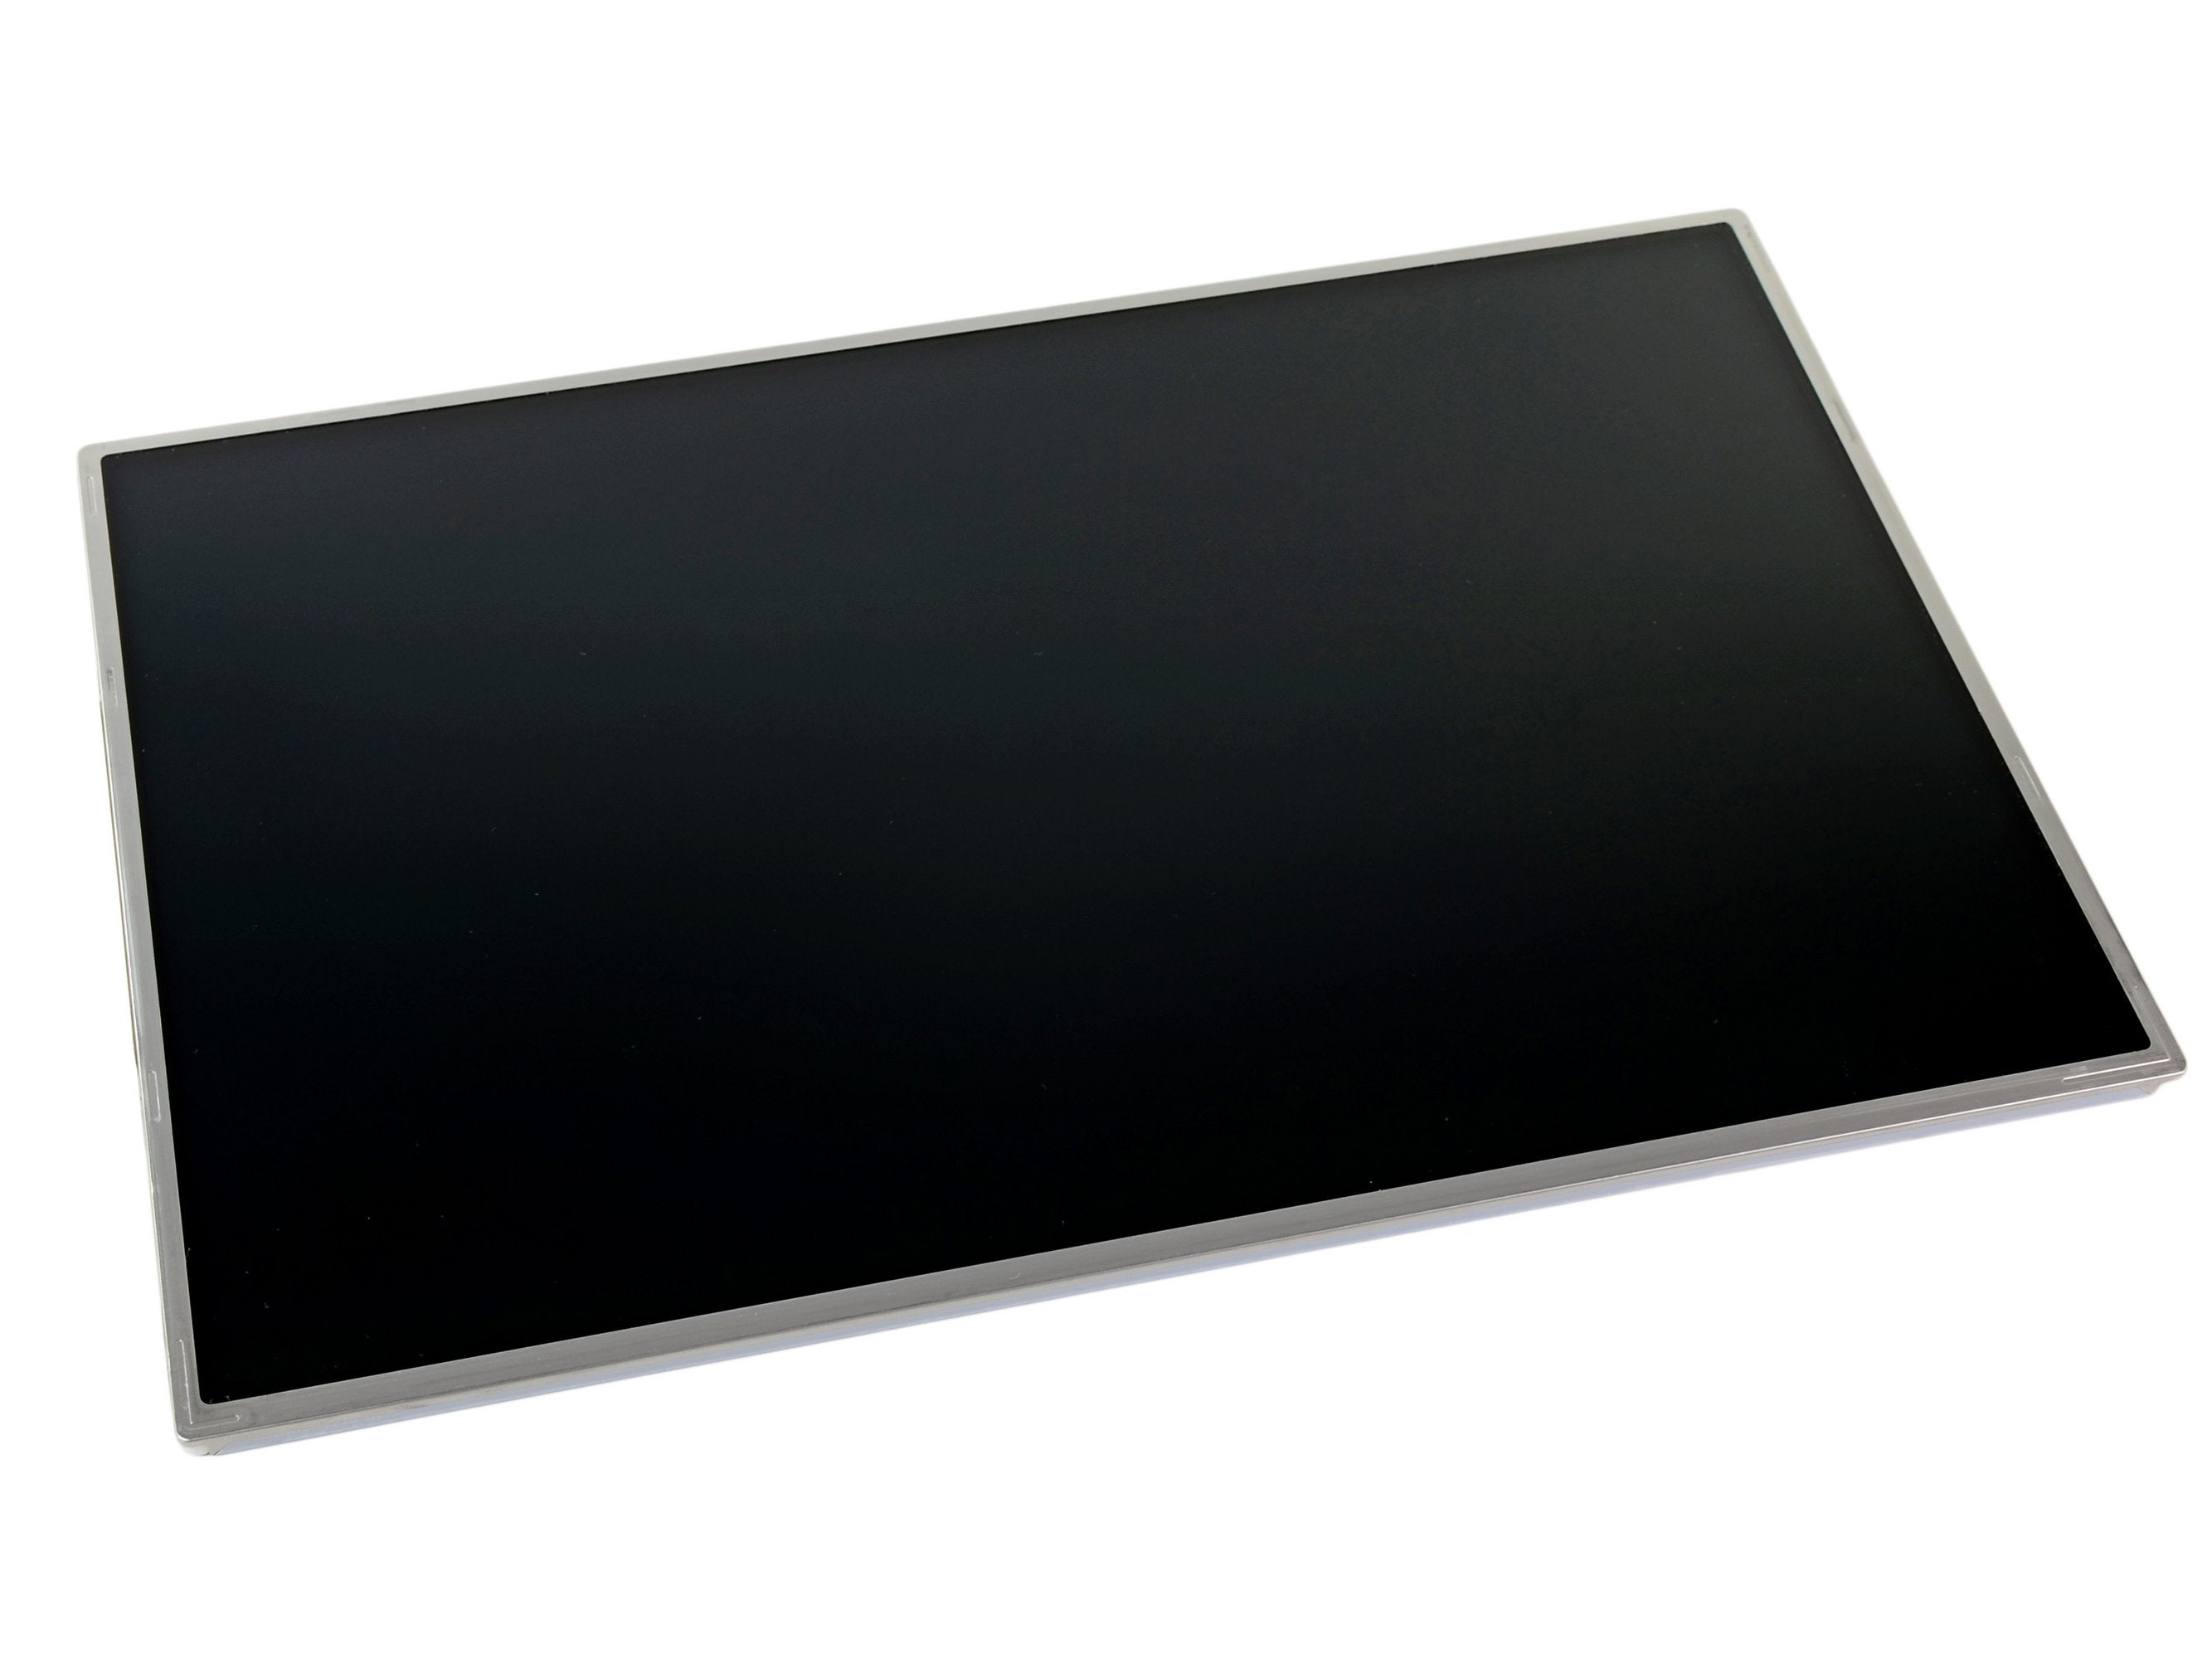 MacBook Pro 17" (Model A1261 Hi-Res) LCD LED Panel